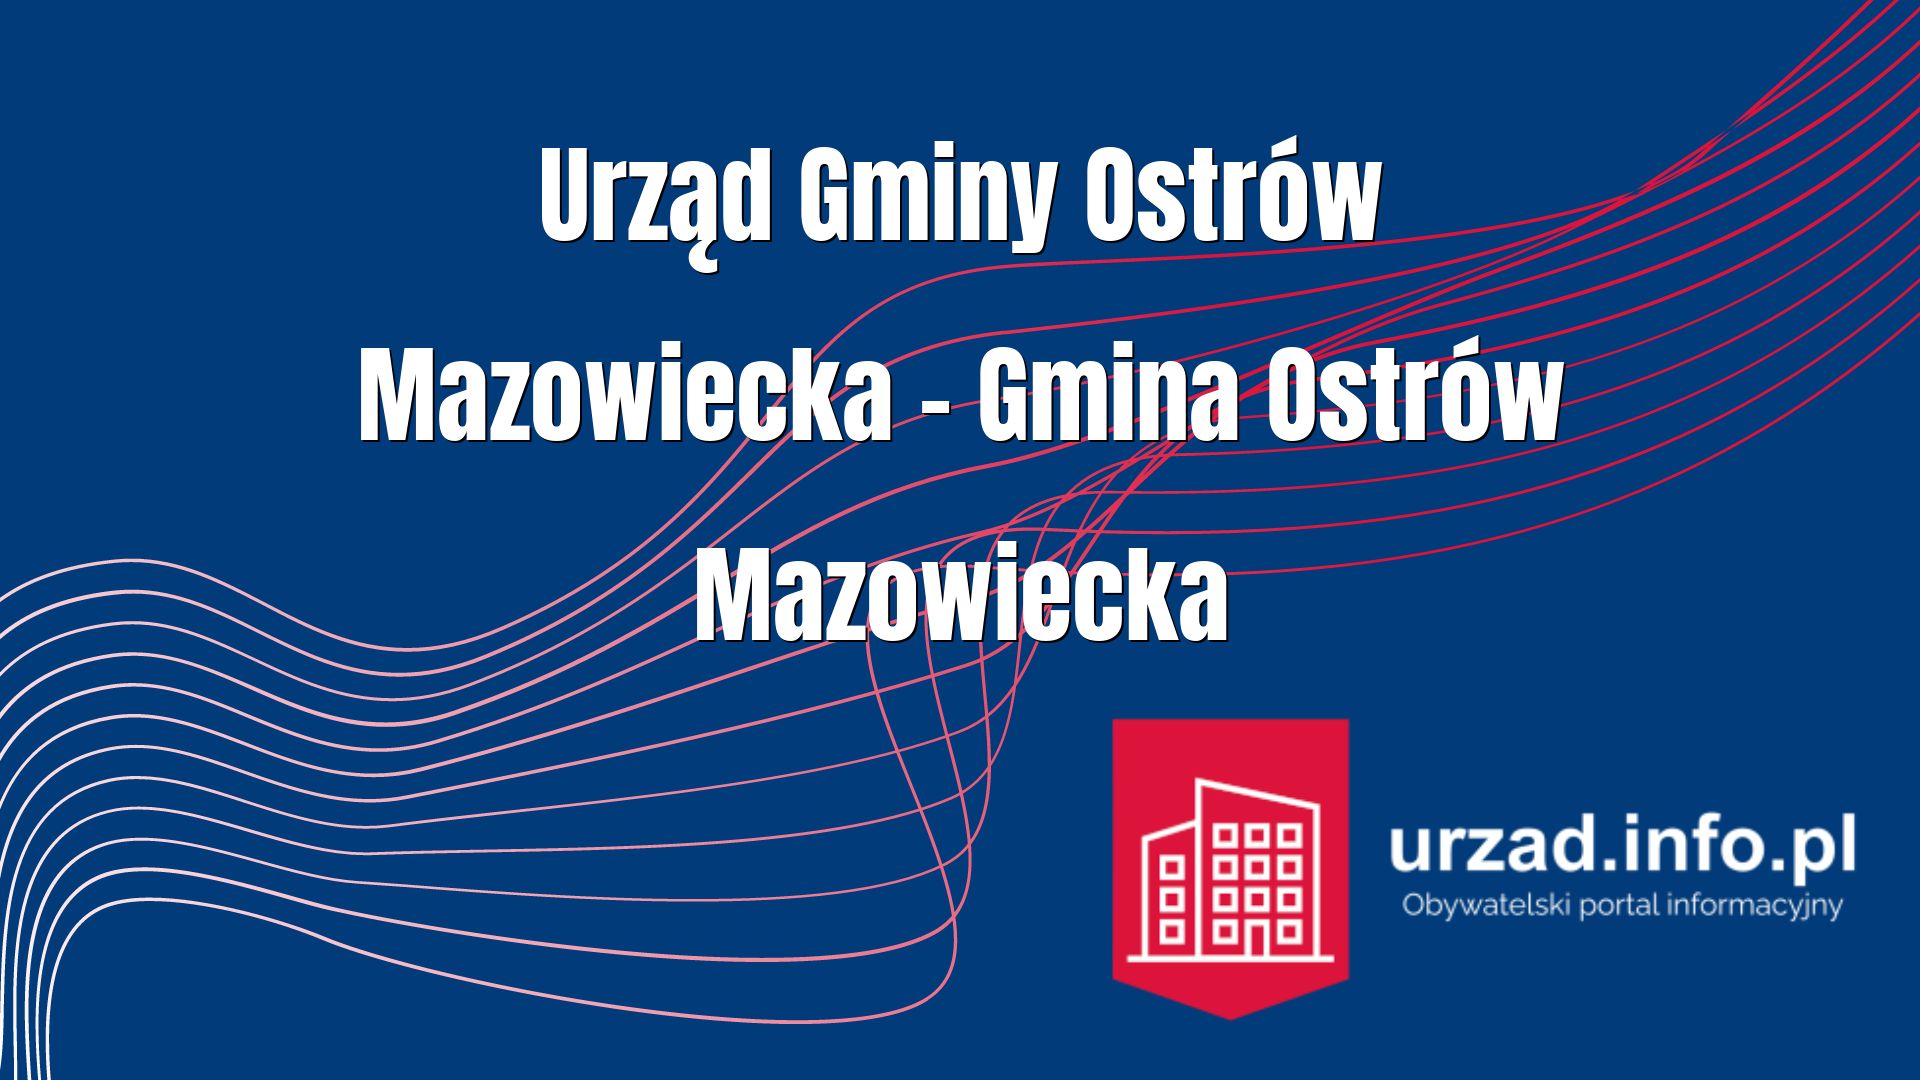 Urząd Gminy Ostrów Mazowiecka – Gmina Ostrów Mazowiecka